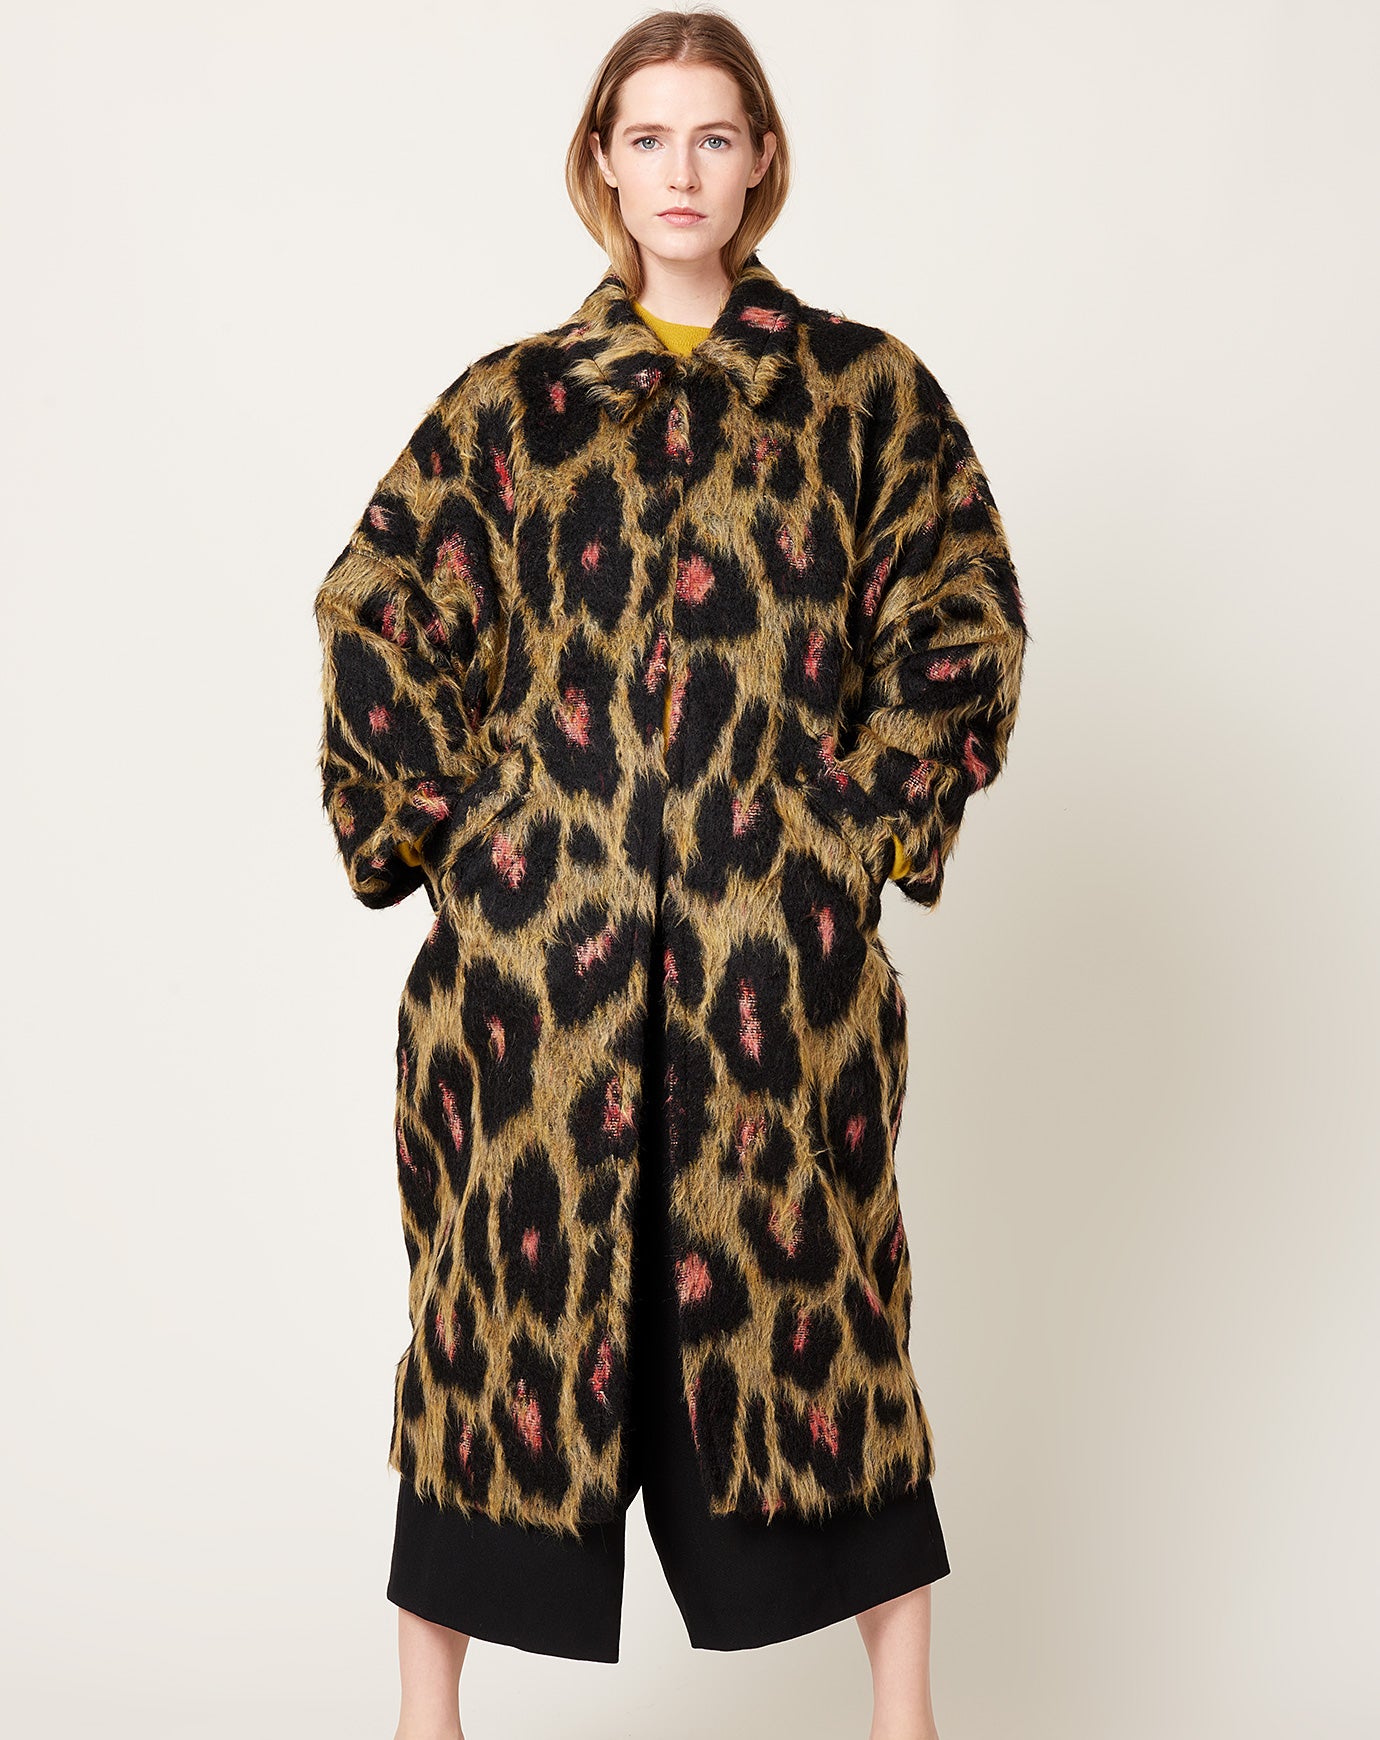 Rachel Comey Pantheon Coat in Brushed Leopard